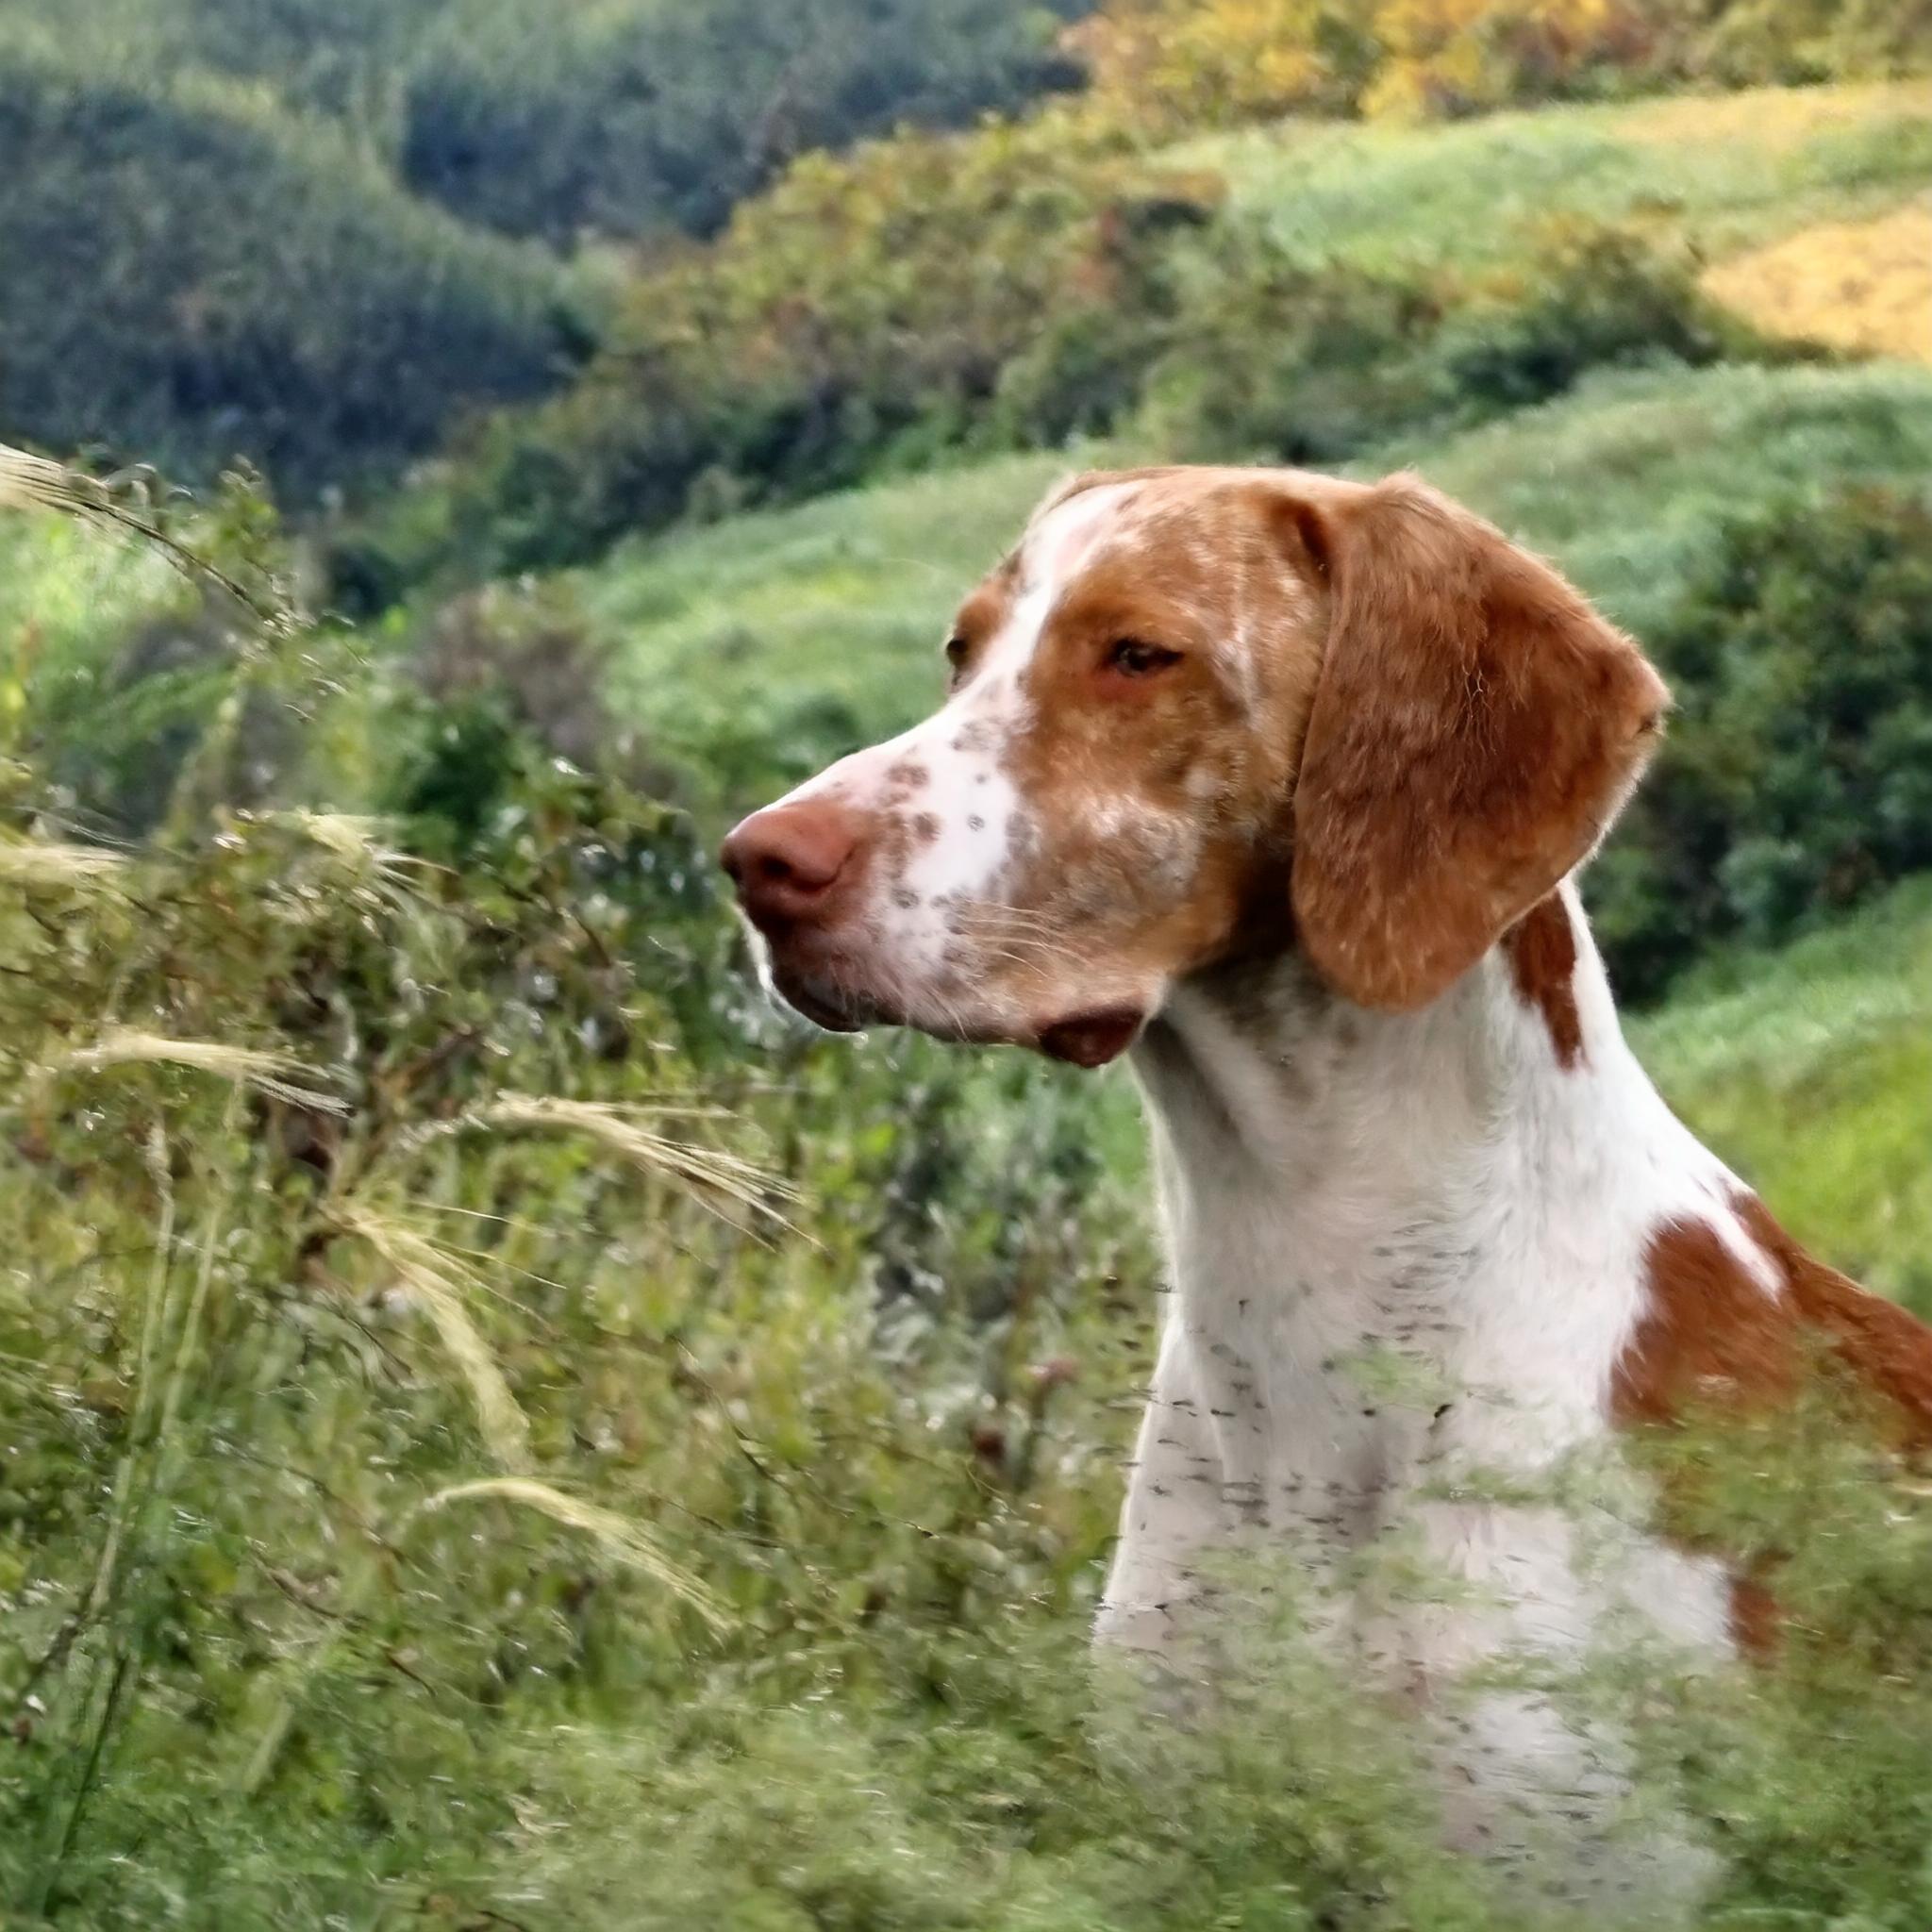 De Braque de l'Ariège is een hondenras dat afkomstig is uit Frankrijk